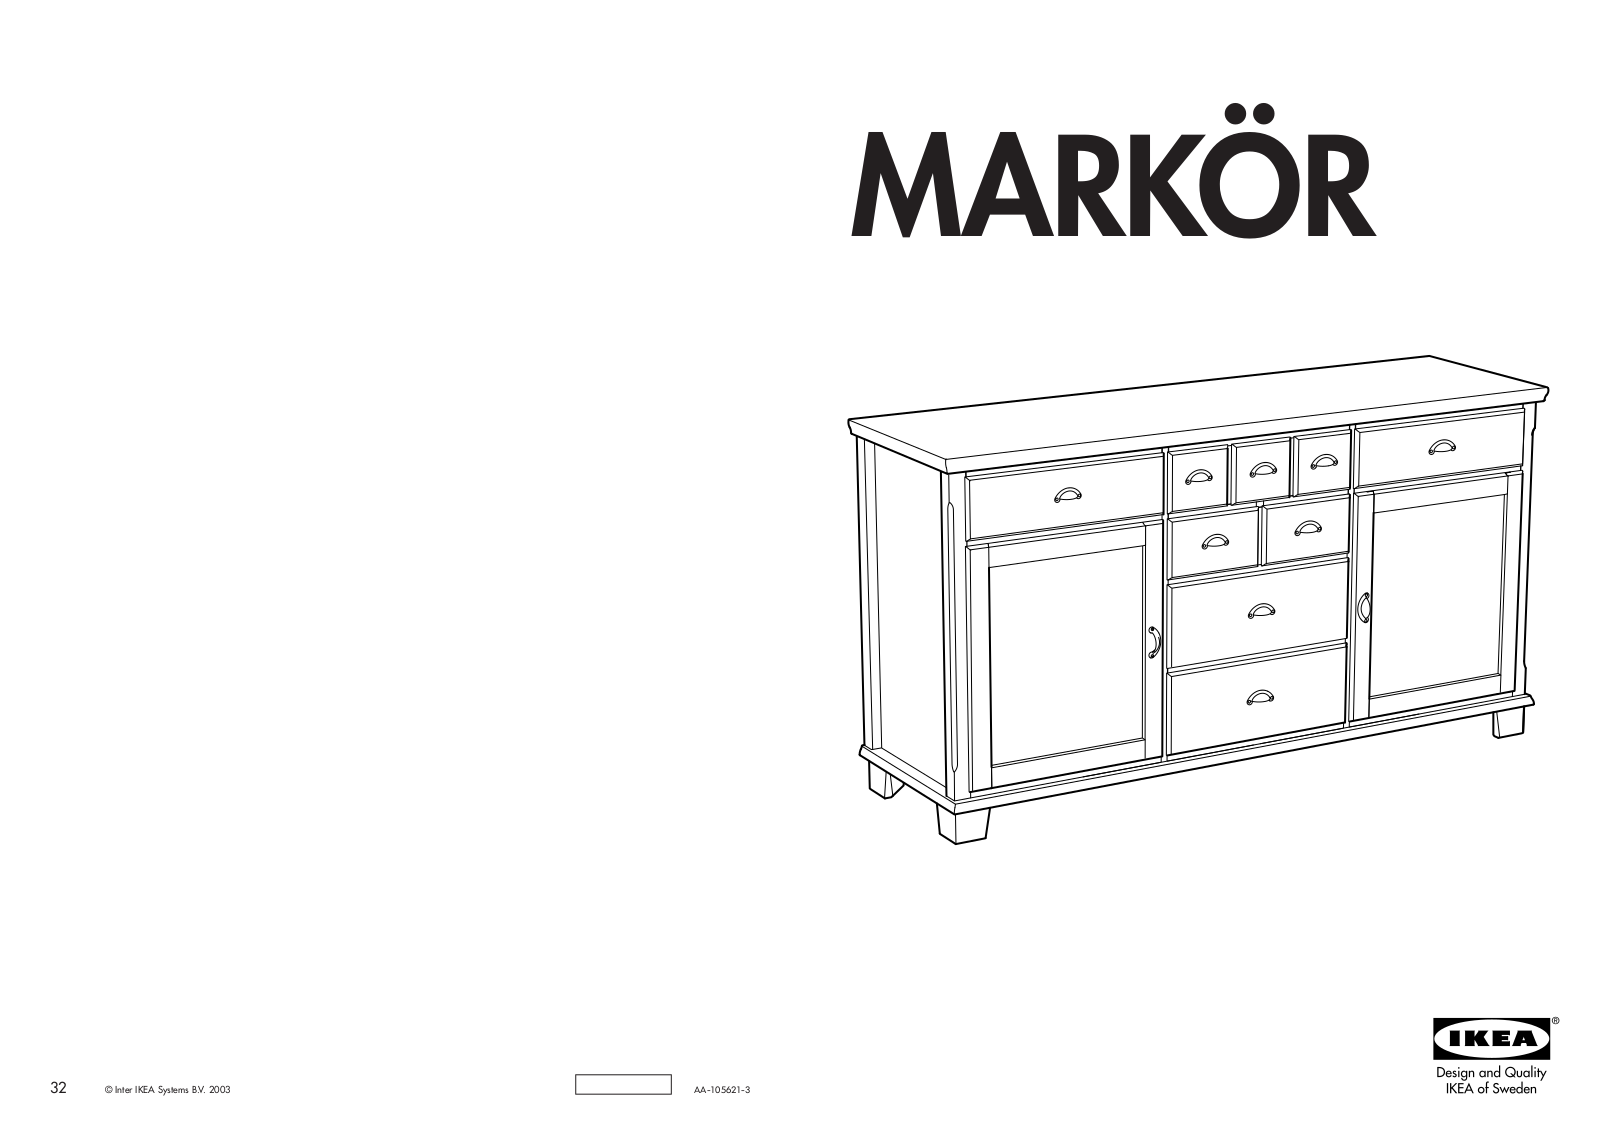 Ikea MARKOR ASSEMBLY Manual